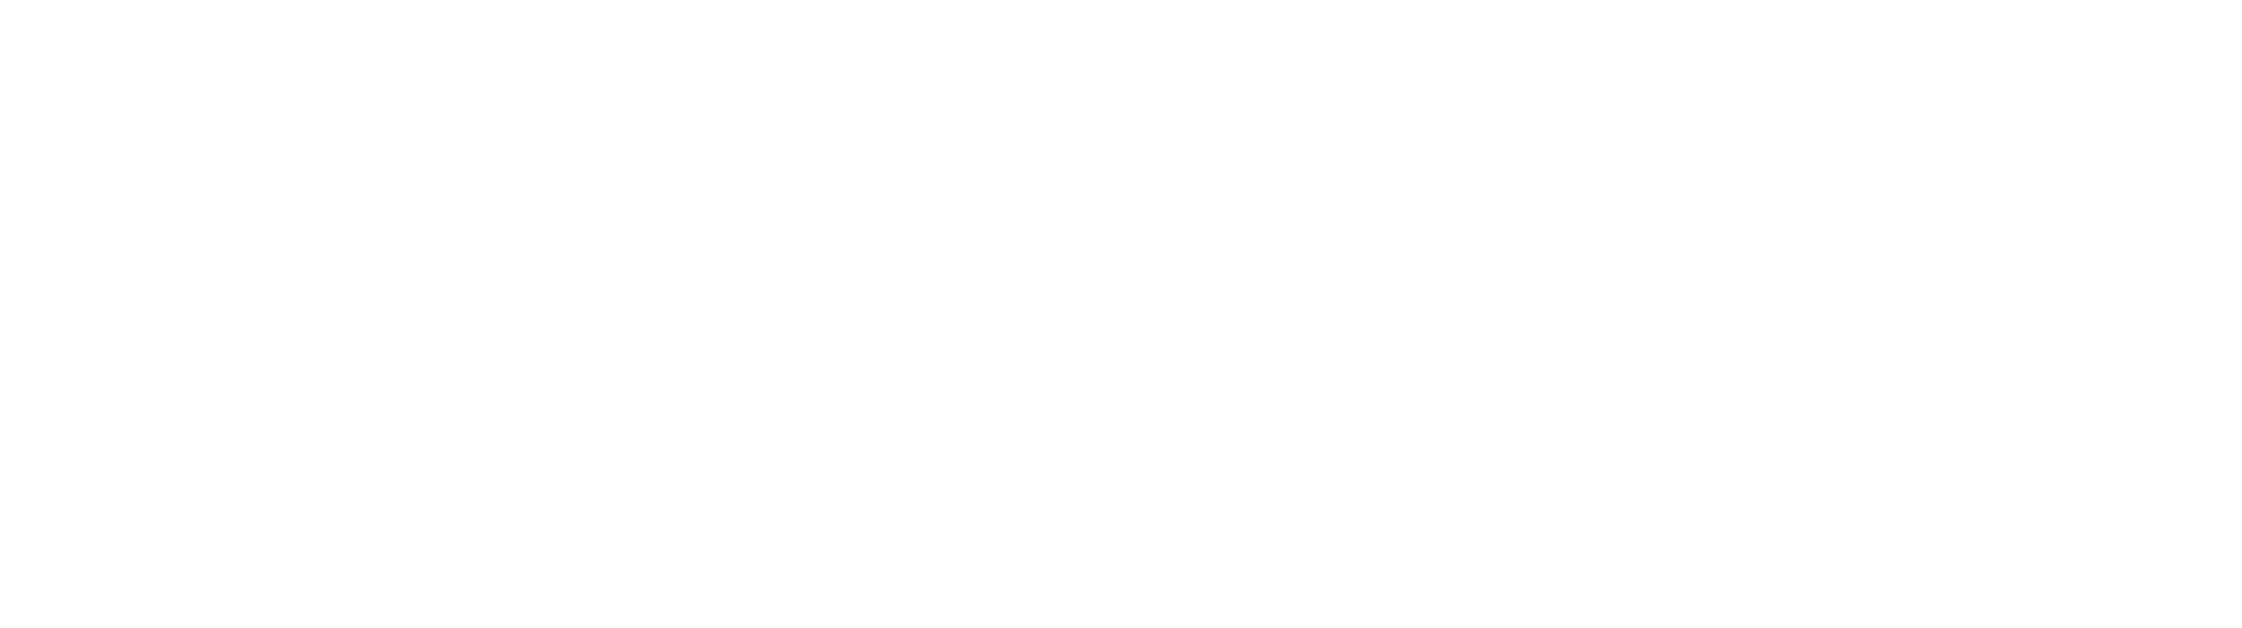 RP Baffour Foundation